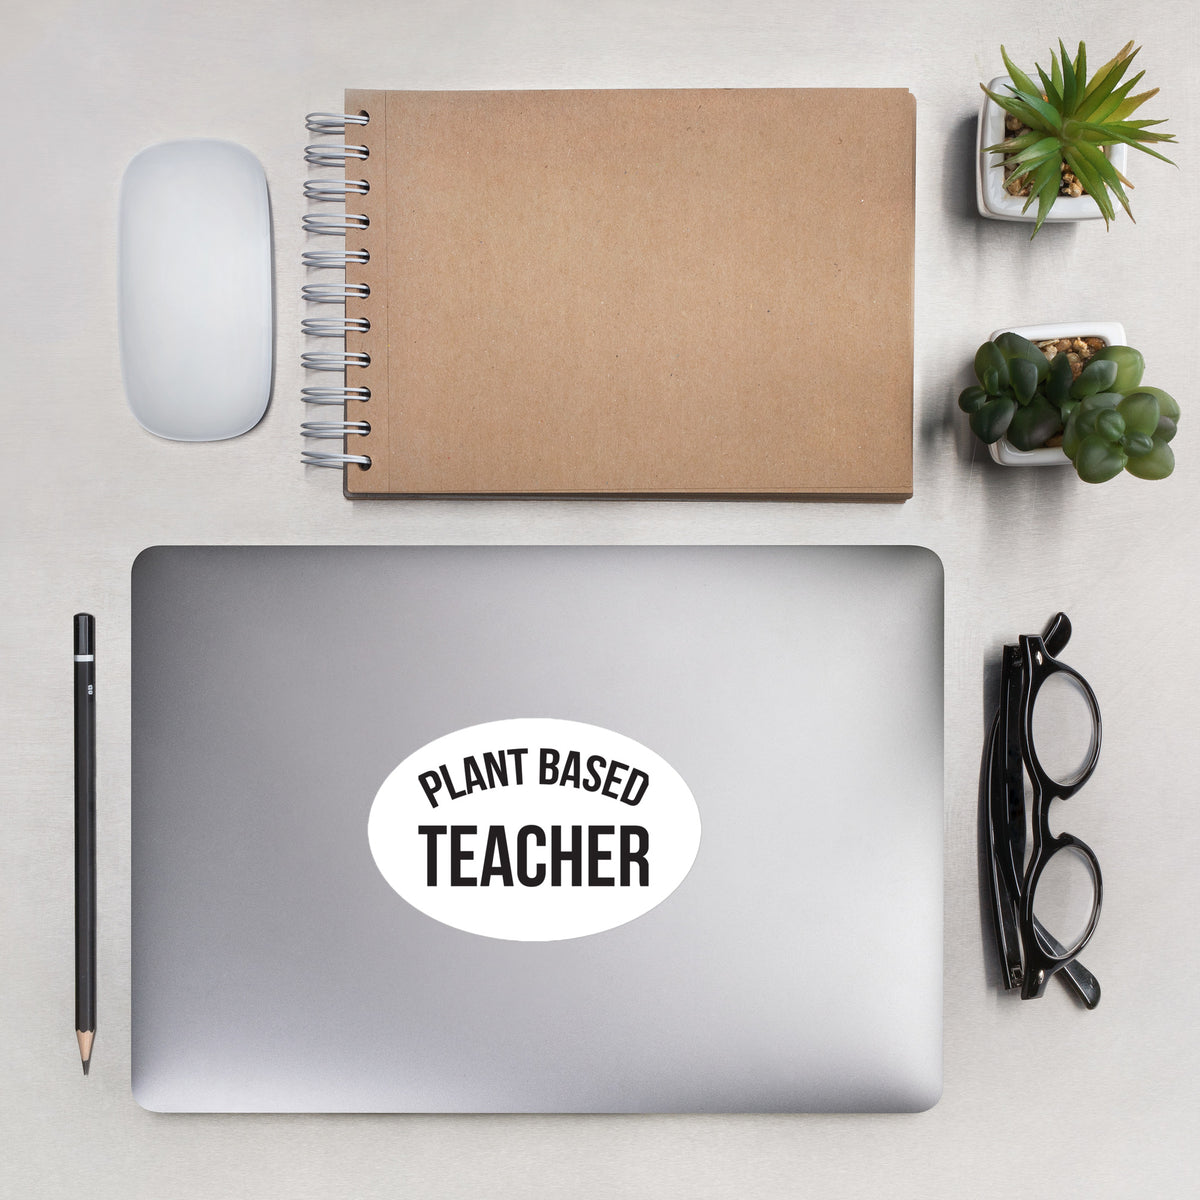 PLANT BASED TEACHER sticker